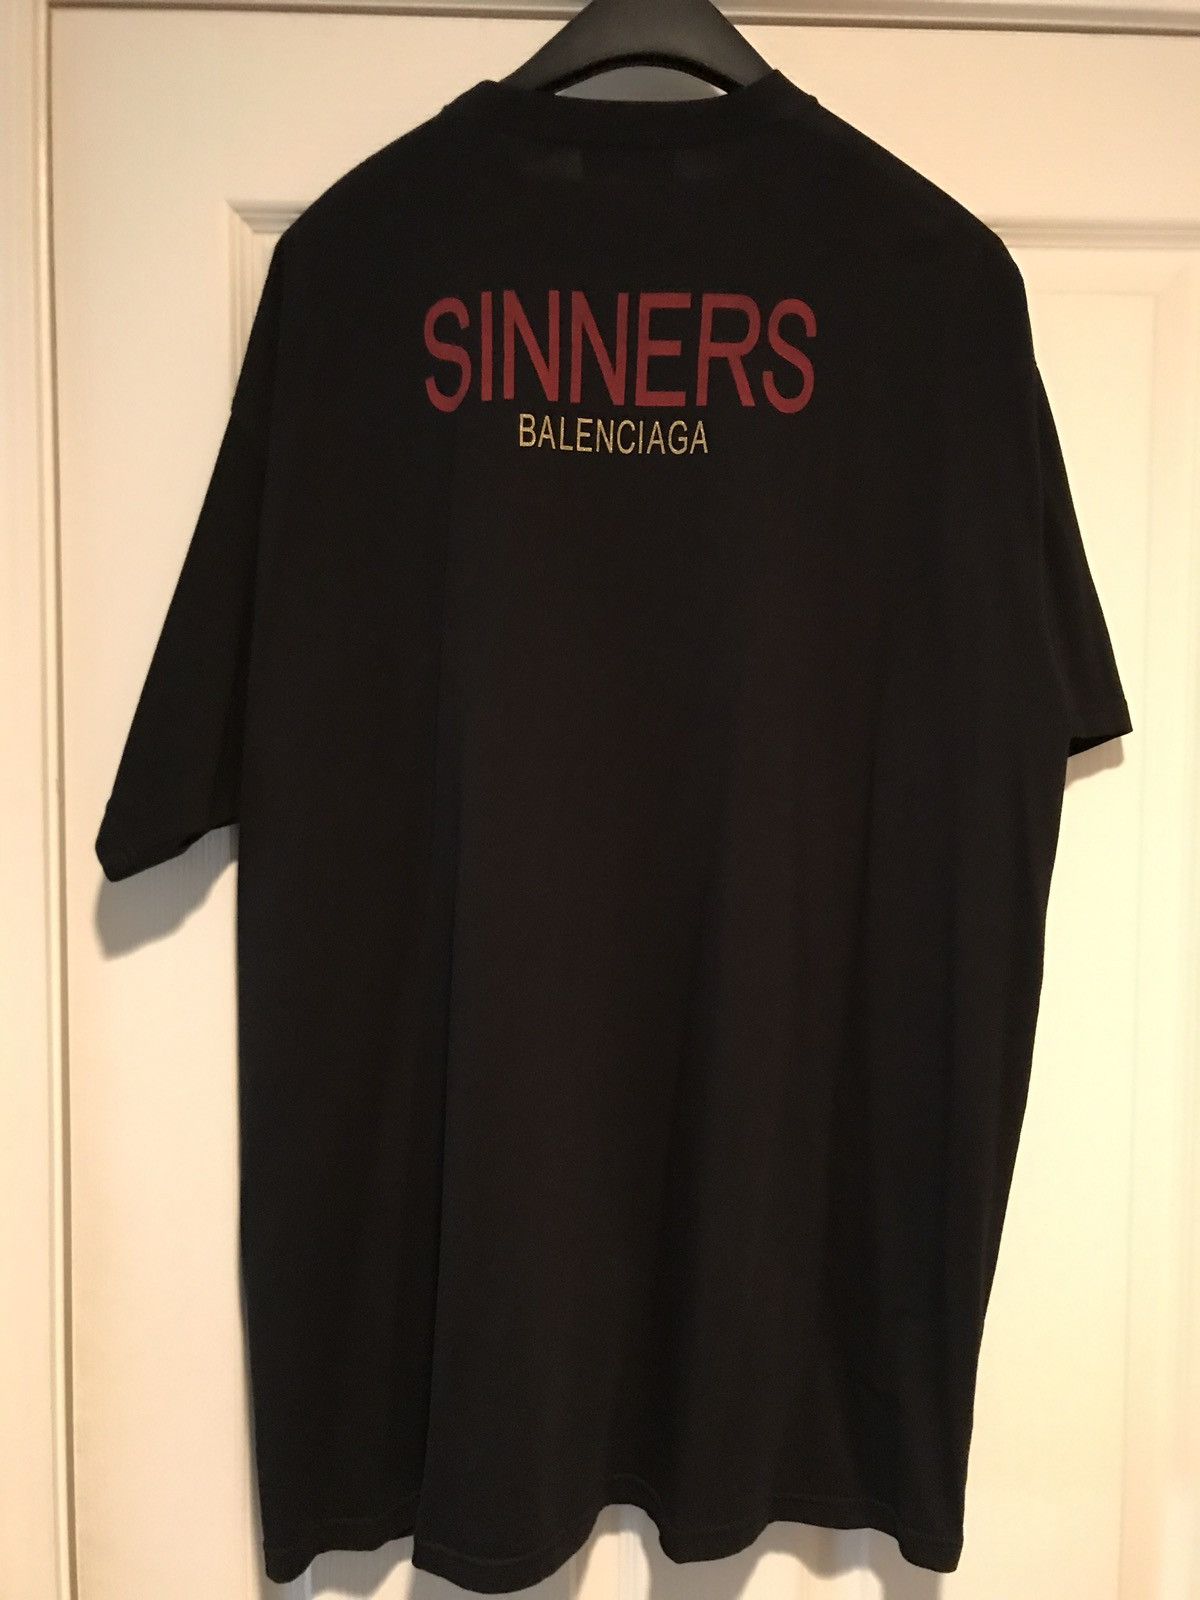 balenciaga sinners tシャツよろしくお願いします